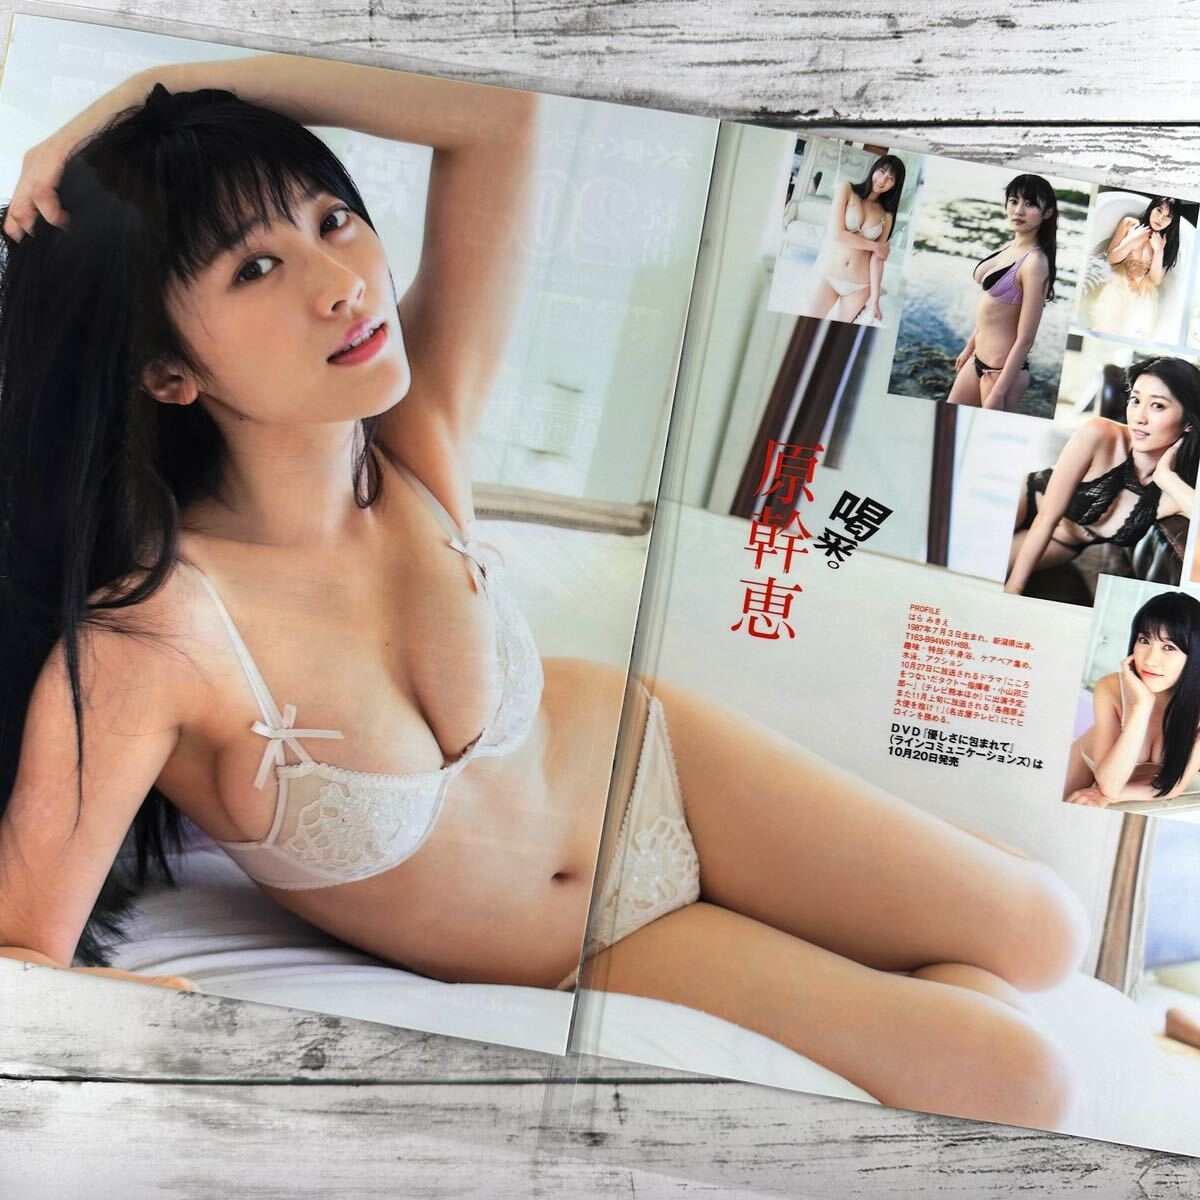 [ высокое качество ламинирование отделка ][...] EX большой .2013 год 11 месяц номер журнал вырезки 4P A4 плёнка купальный костюм bikini model актер женщина super 